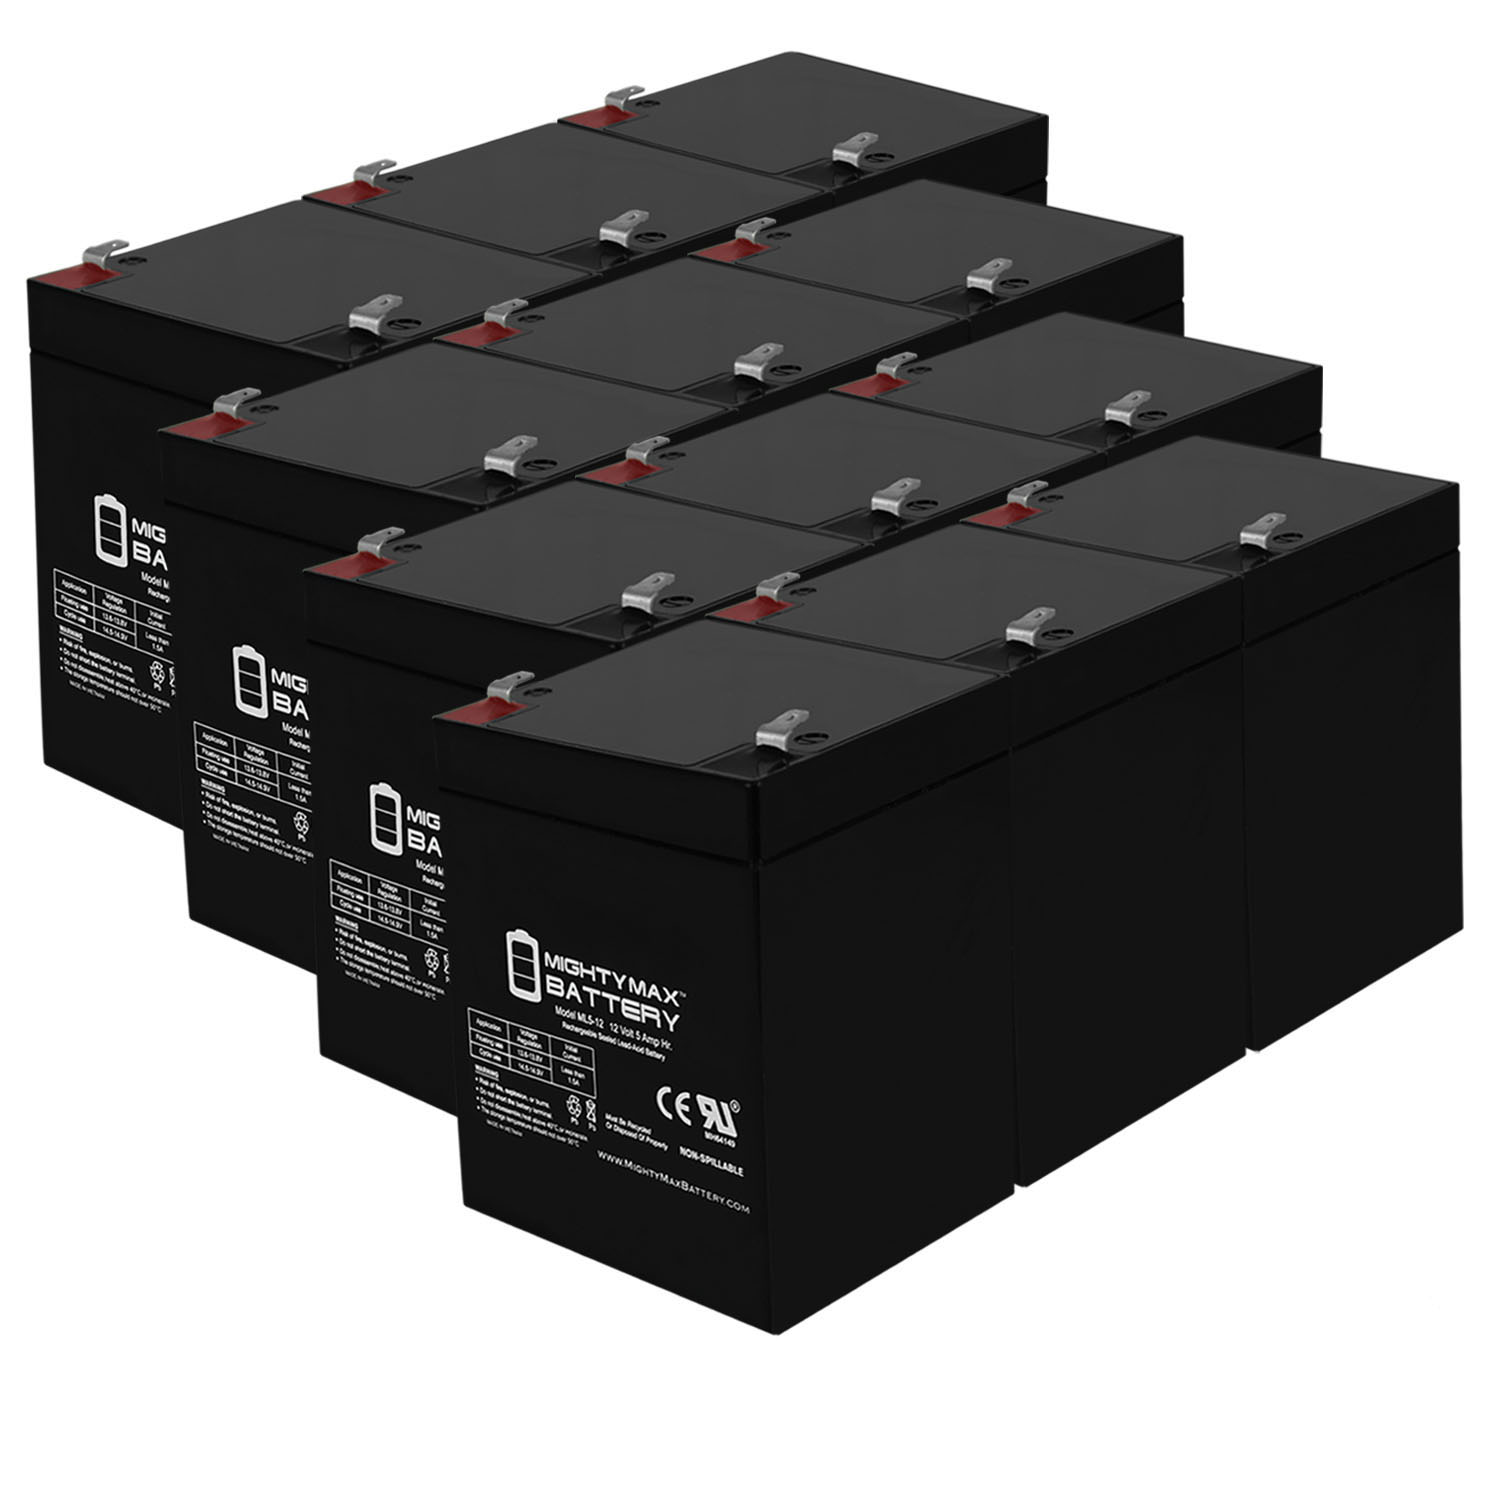 ML5-12 - 12V 5AH Battery for Napco Alarms MA1016LKDL - 12 Pack